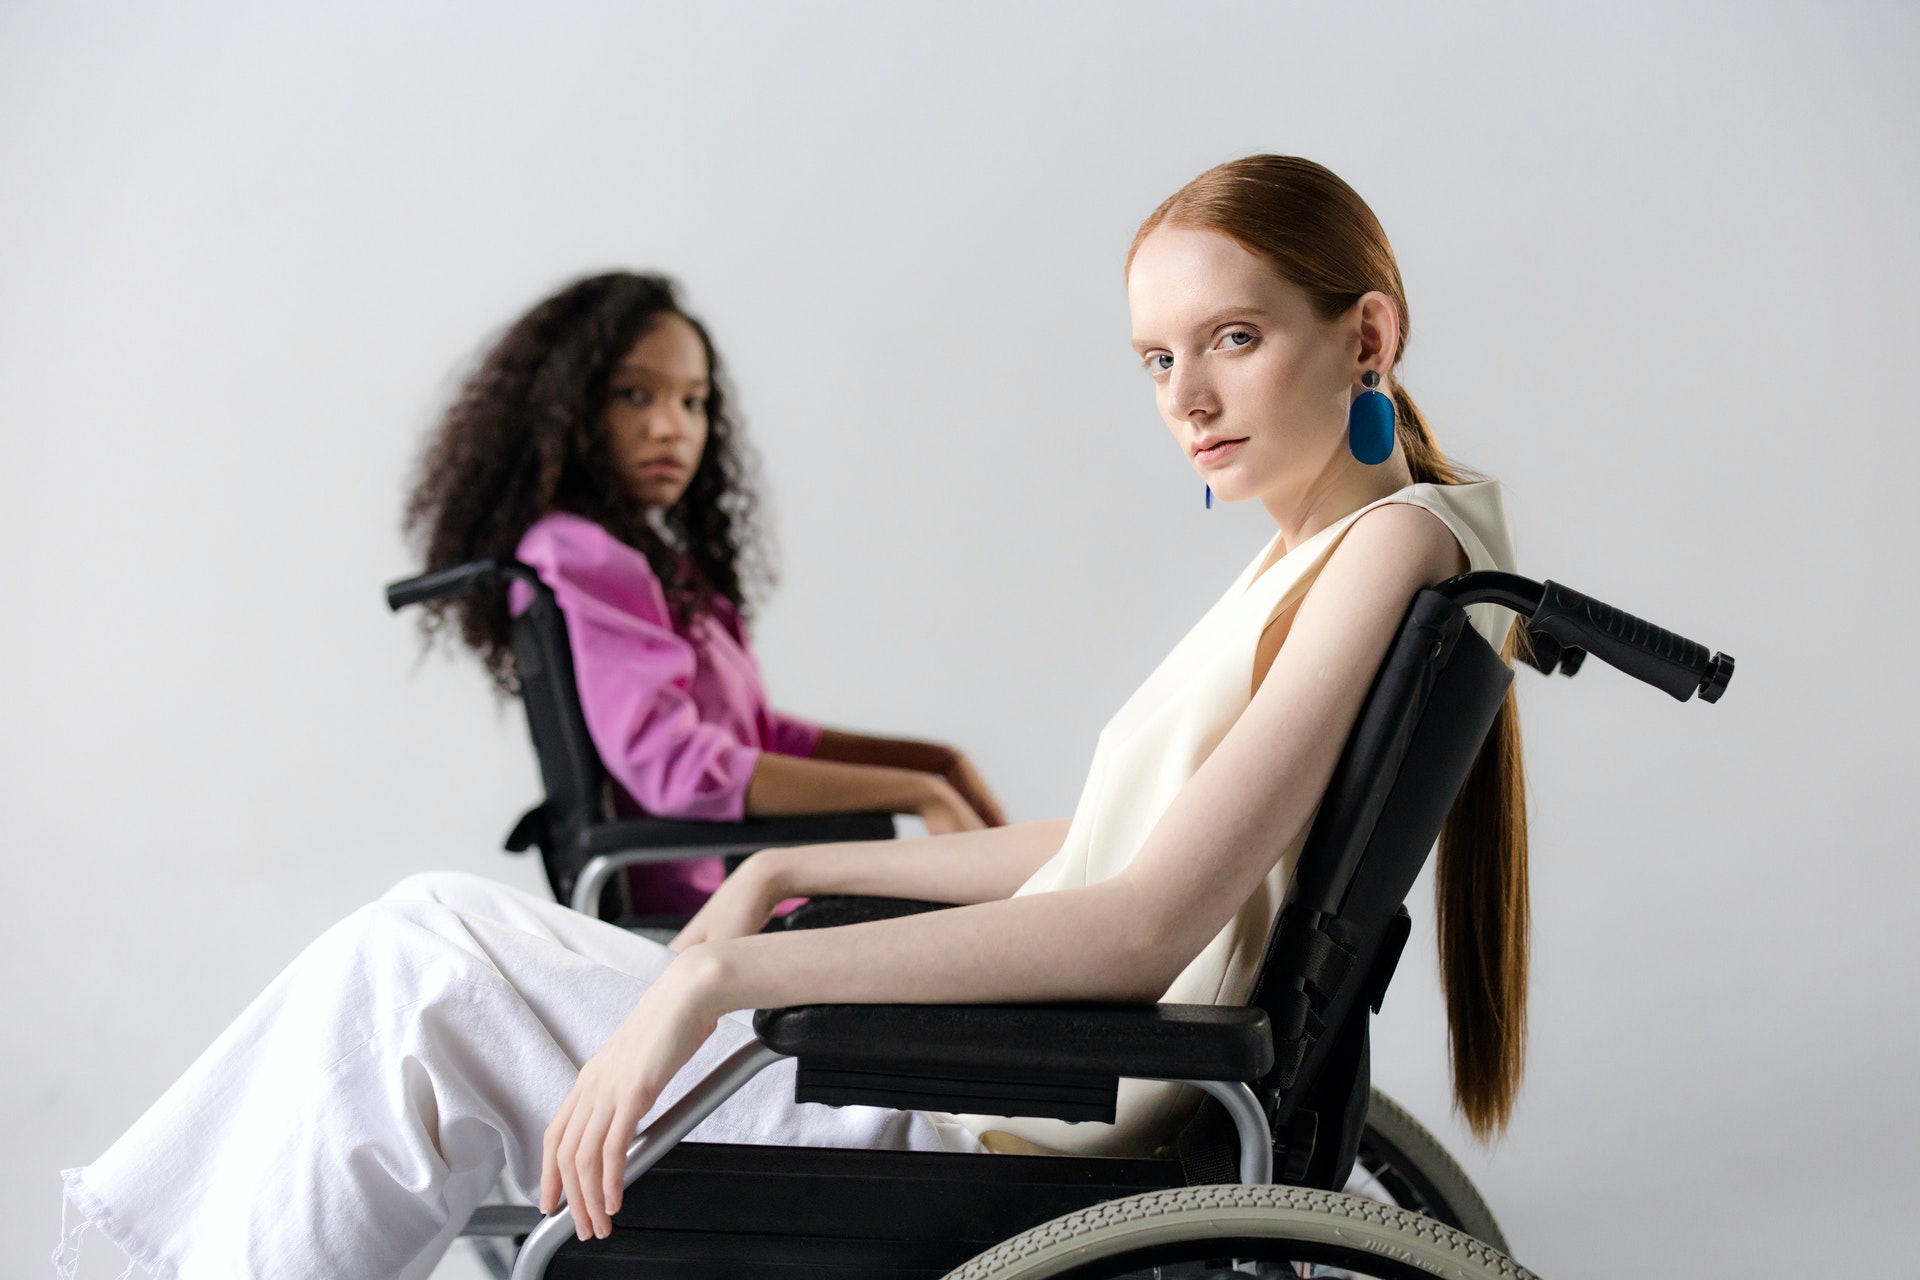 Foto de duas mulheres jovens, uma branca e uma negra, de lado, em cadeiras de rodas. Elas olham em direção à câmera e estão com expressões sérias